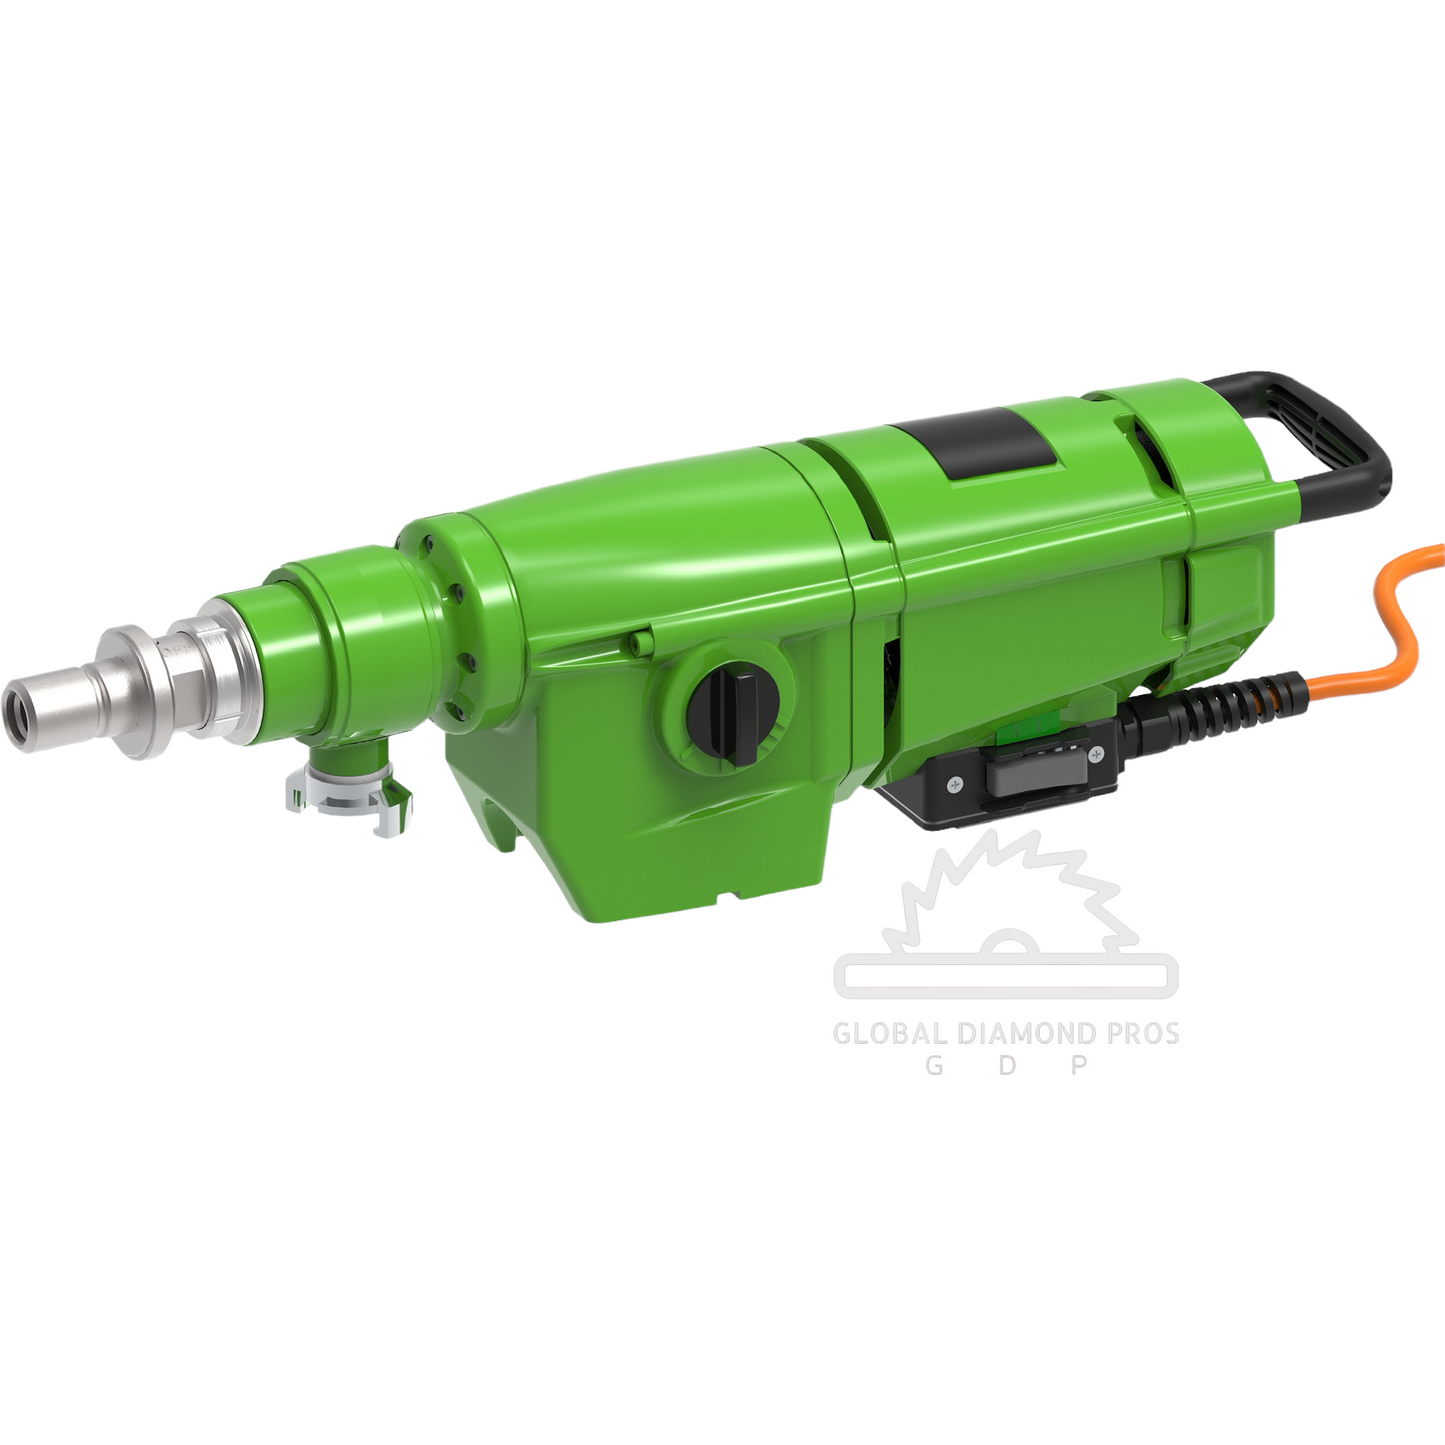 Weka Core Drill Motor DK32 - Dr. Schulze DDM350 Core Drill Motor for Core Drilling - 3 Speed - 110V 30A Core Drill